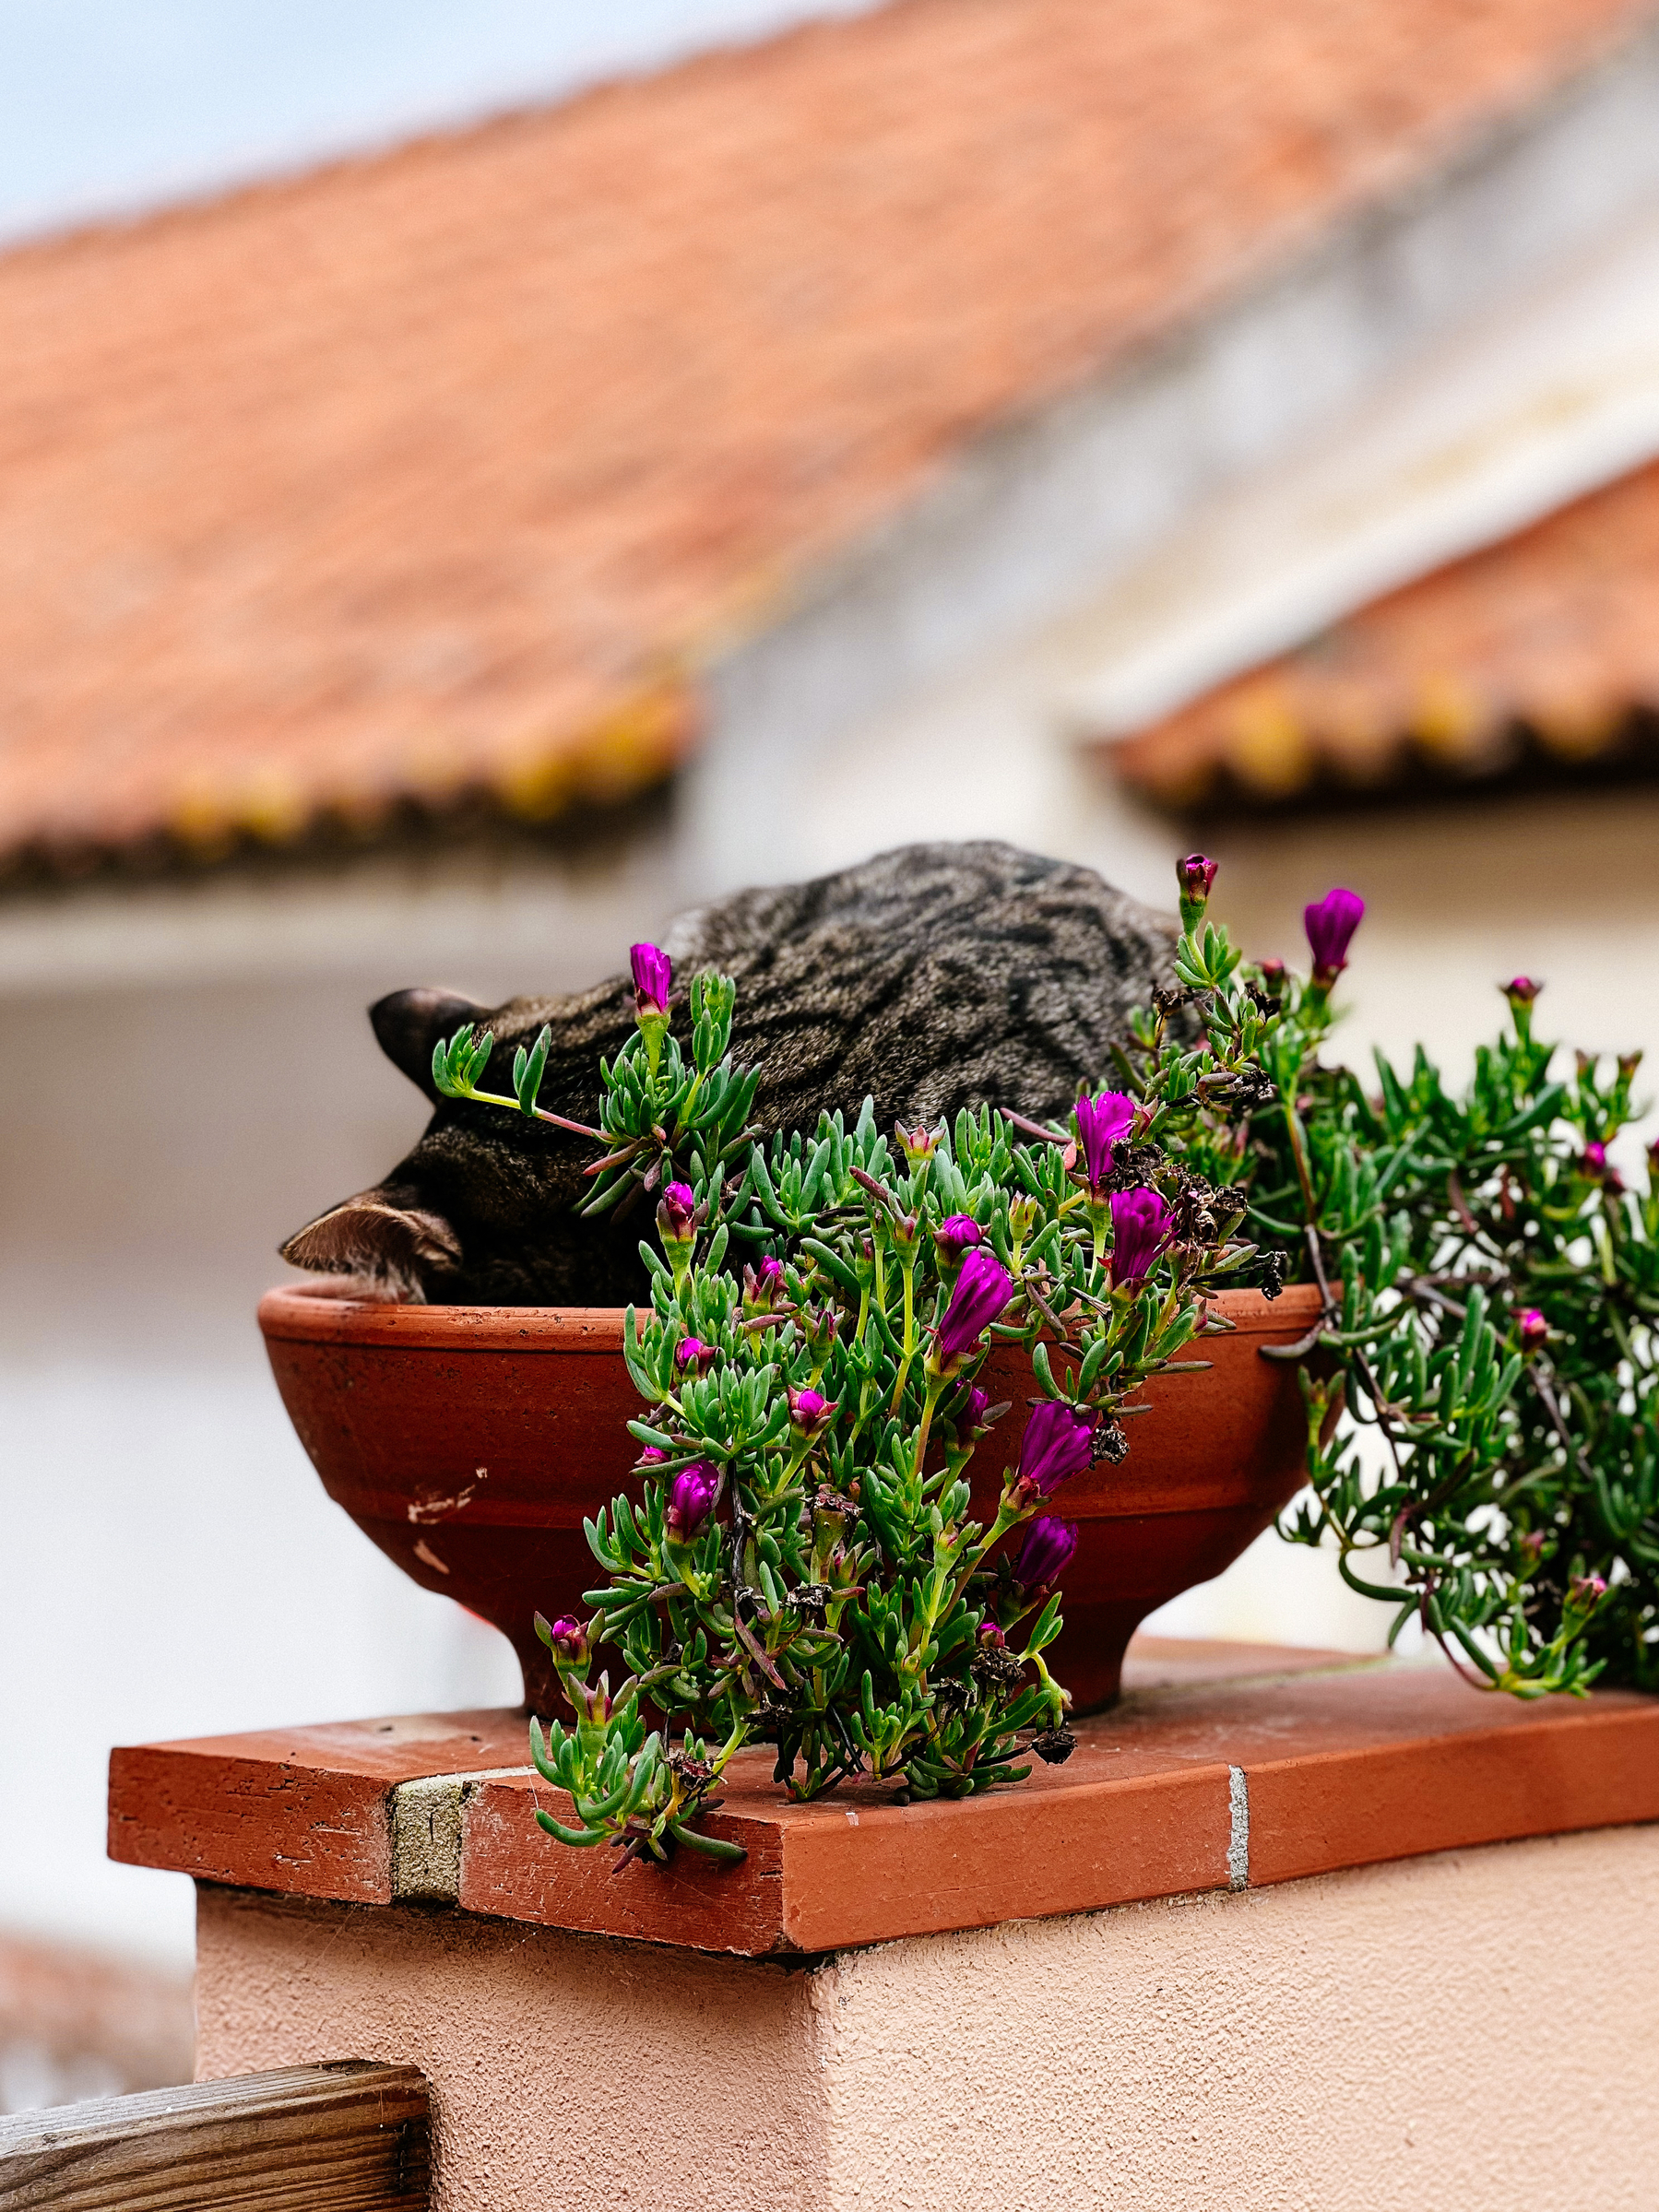 A cat sleeping in a flower pot. 